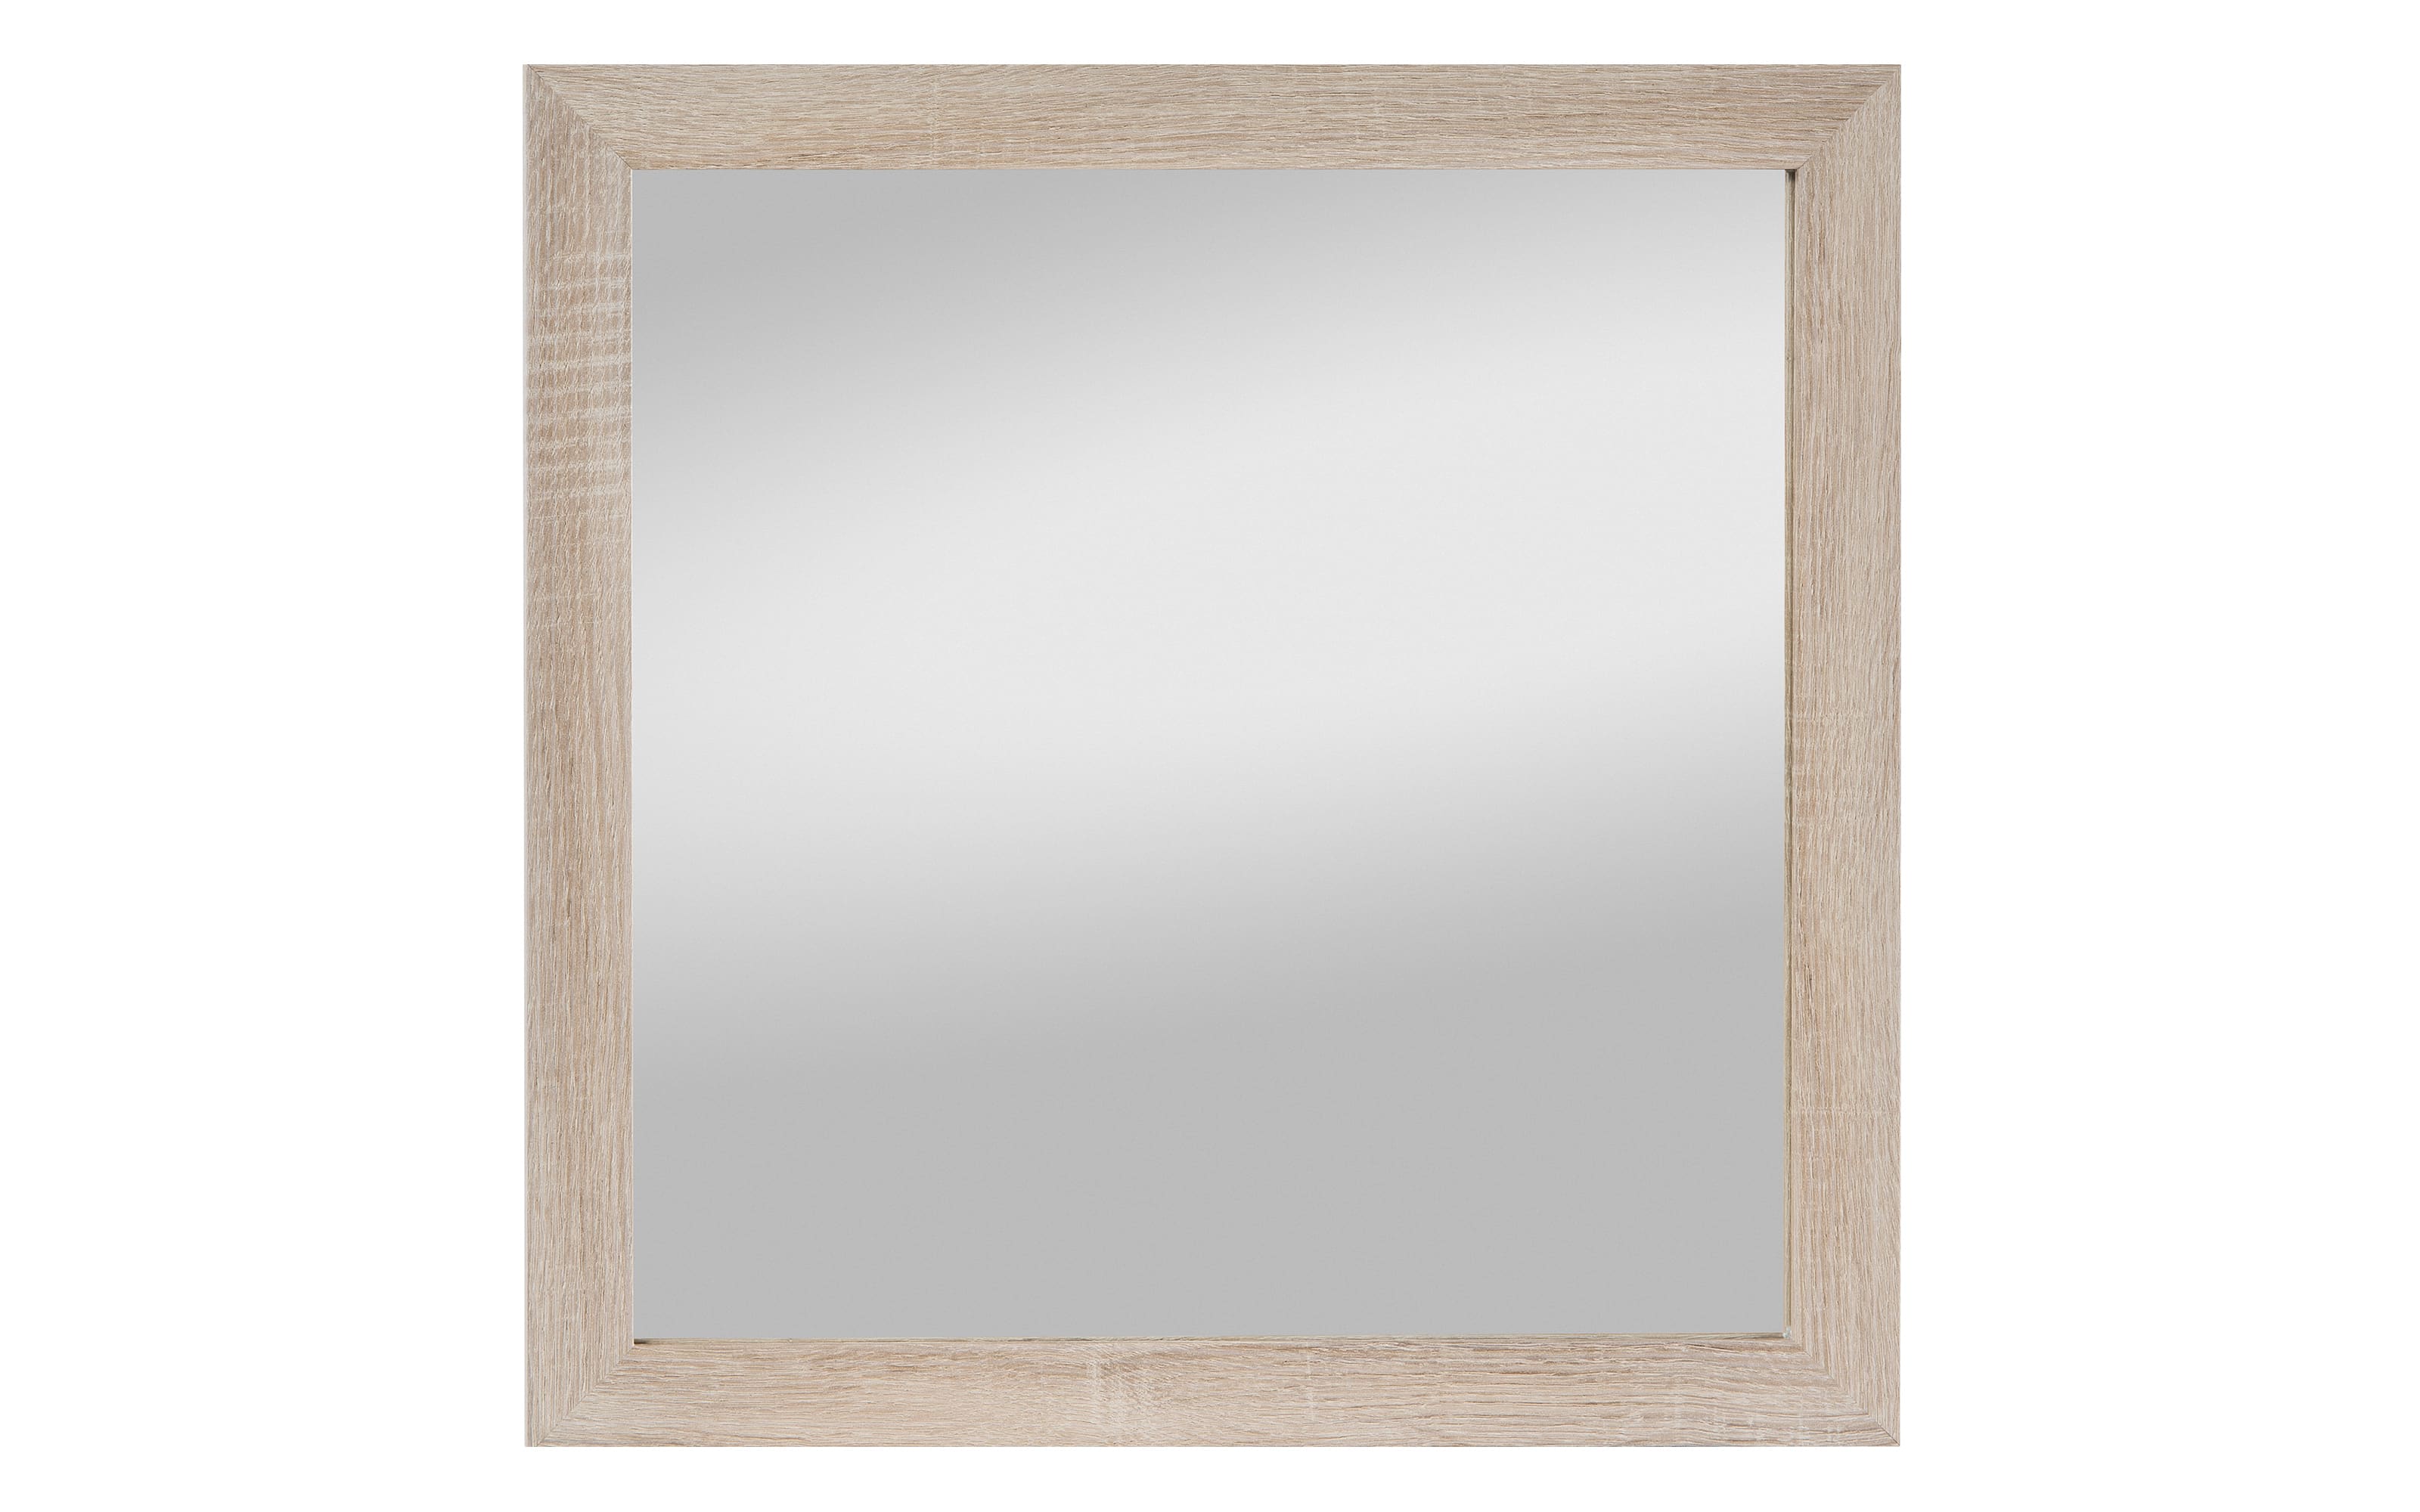 Spiegel Kathi aus Eiche, 45 x 45 cm